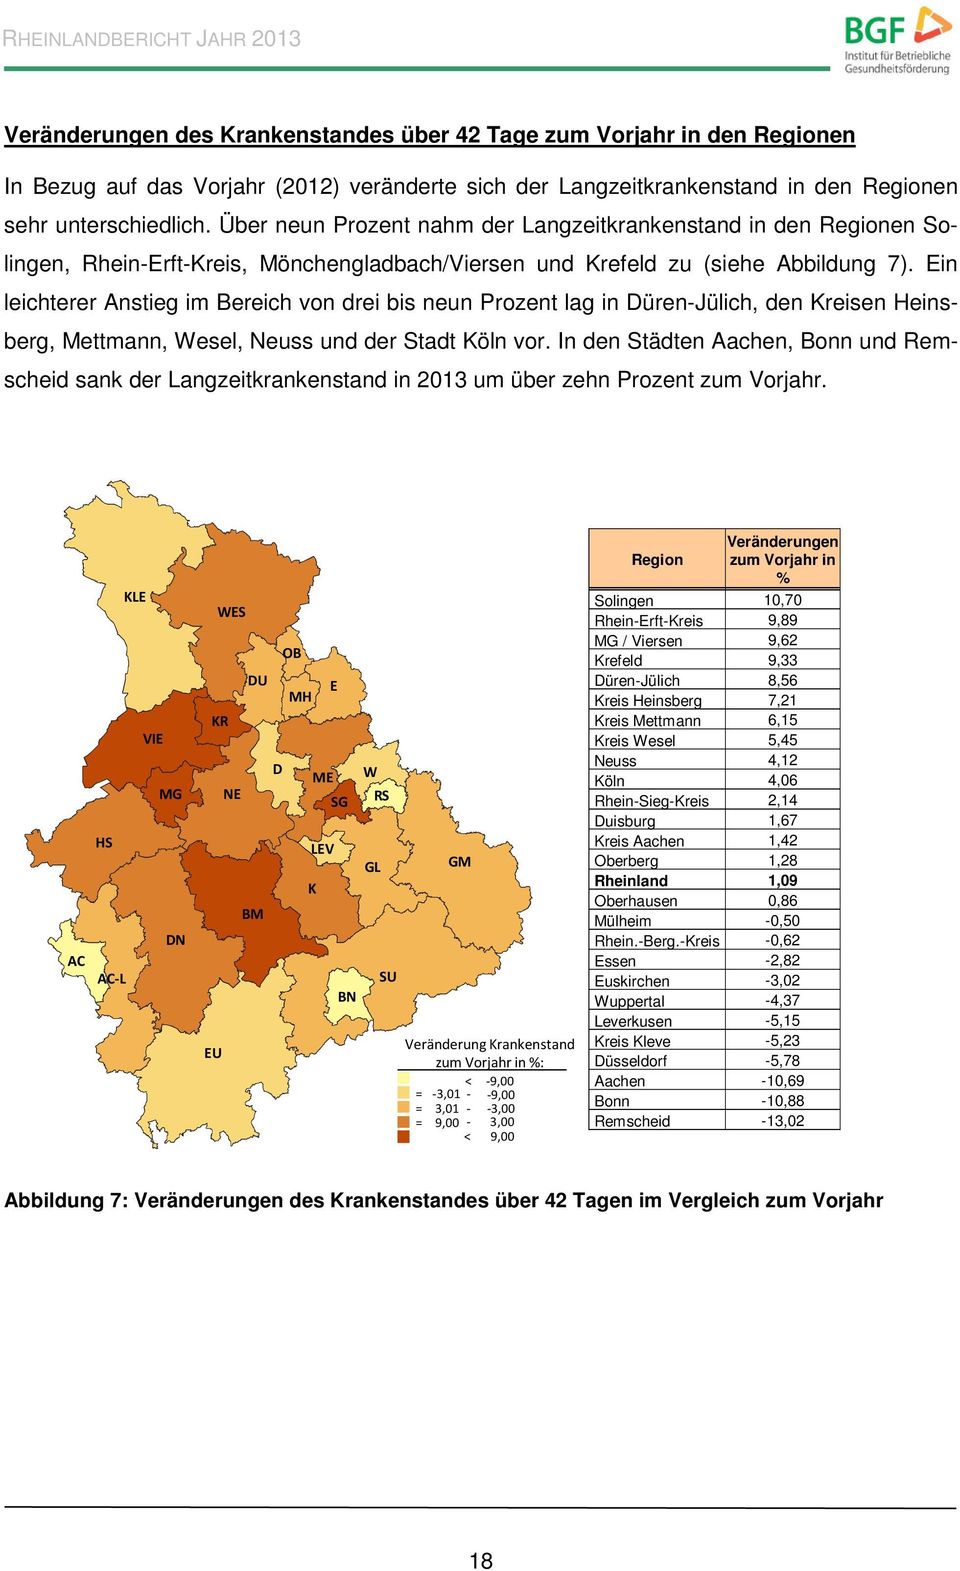 Ein leichterer Anstieg im Bereich von drei bis neun Prozent lag in Düren-Jülich, den Kreisen Heinsberg, Mettmann, Wesel, Neuss und der Stadt Köln vor.